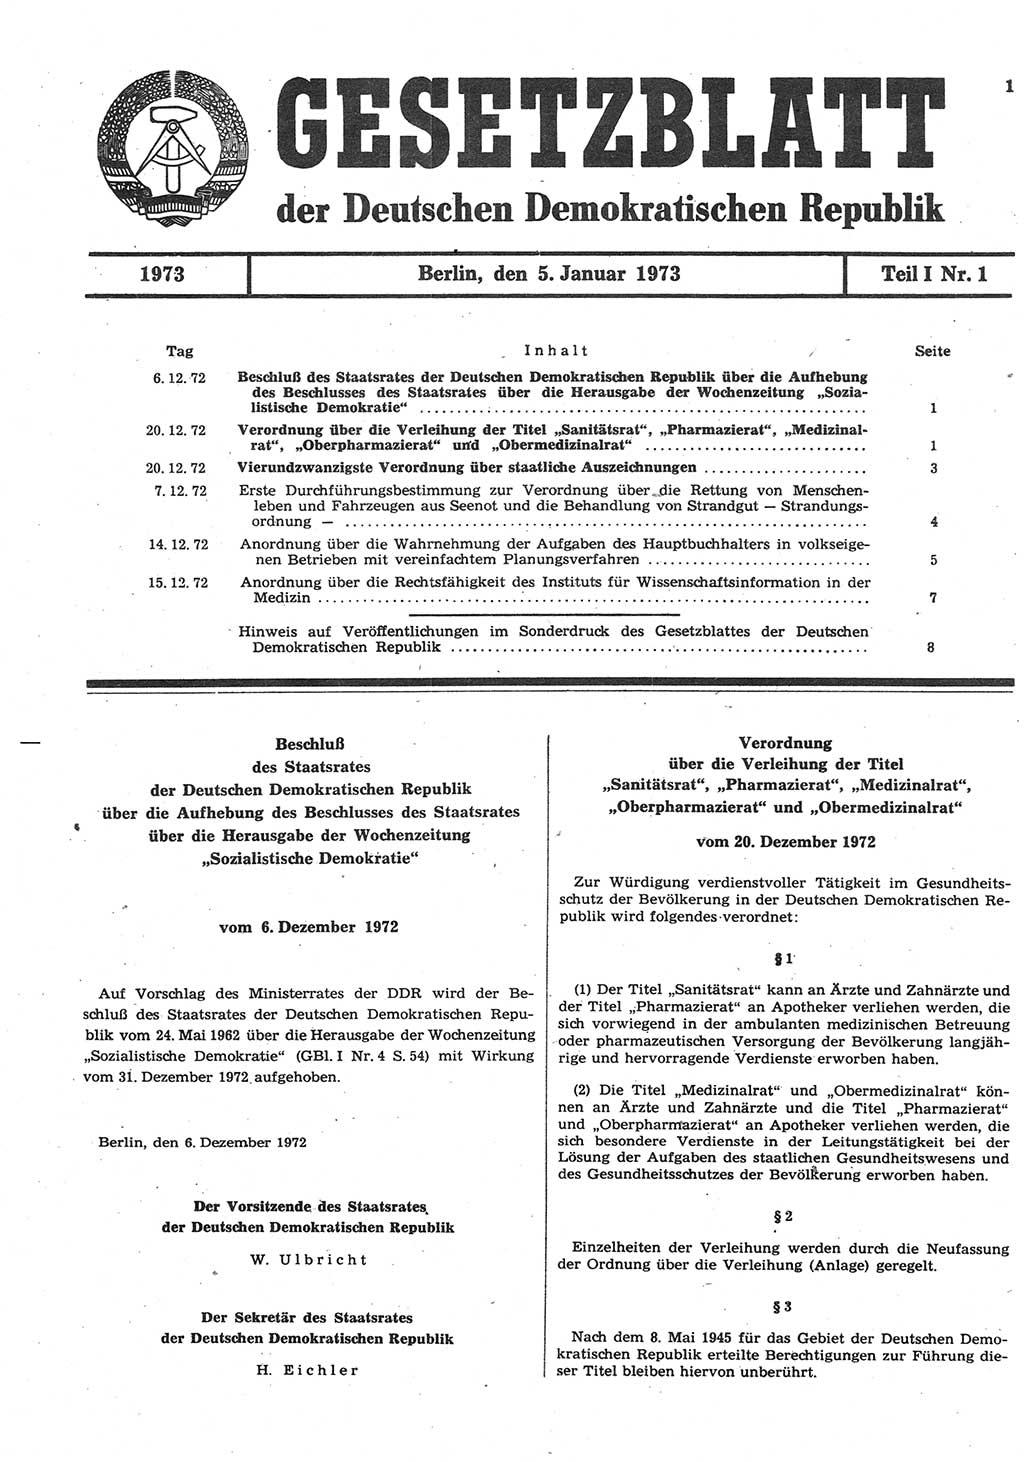 Gesetzblatt (GBl.) der Deutschen Demokratischen Republik (DDR) Teil Ⅰ 1973, Seite 1 (GBl. DDR Ⅰ 1973, S. 1)